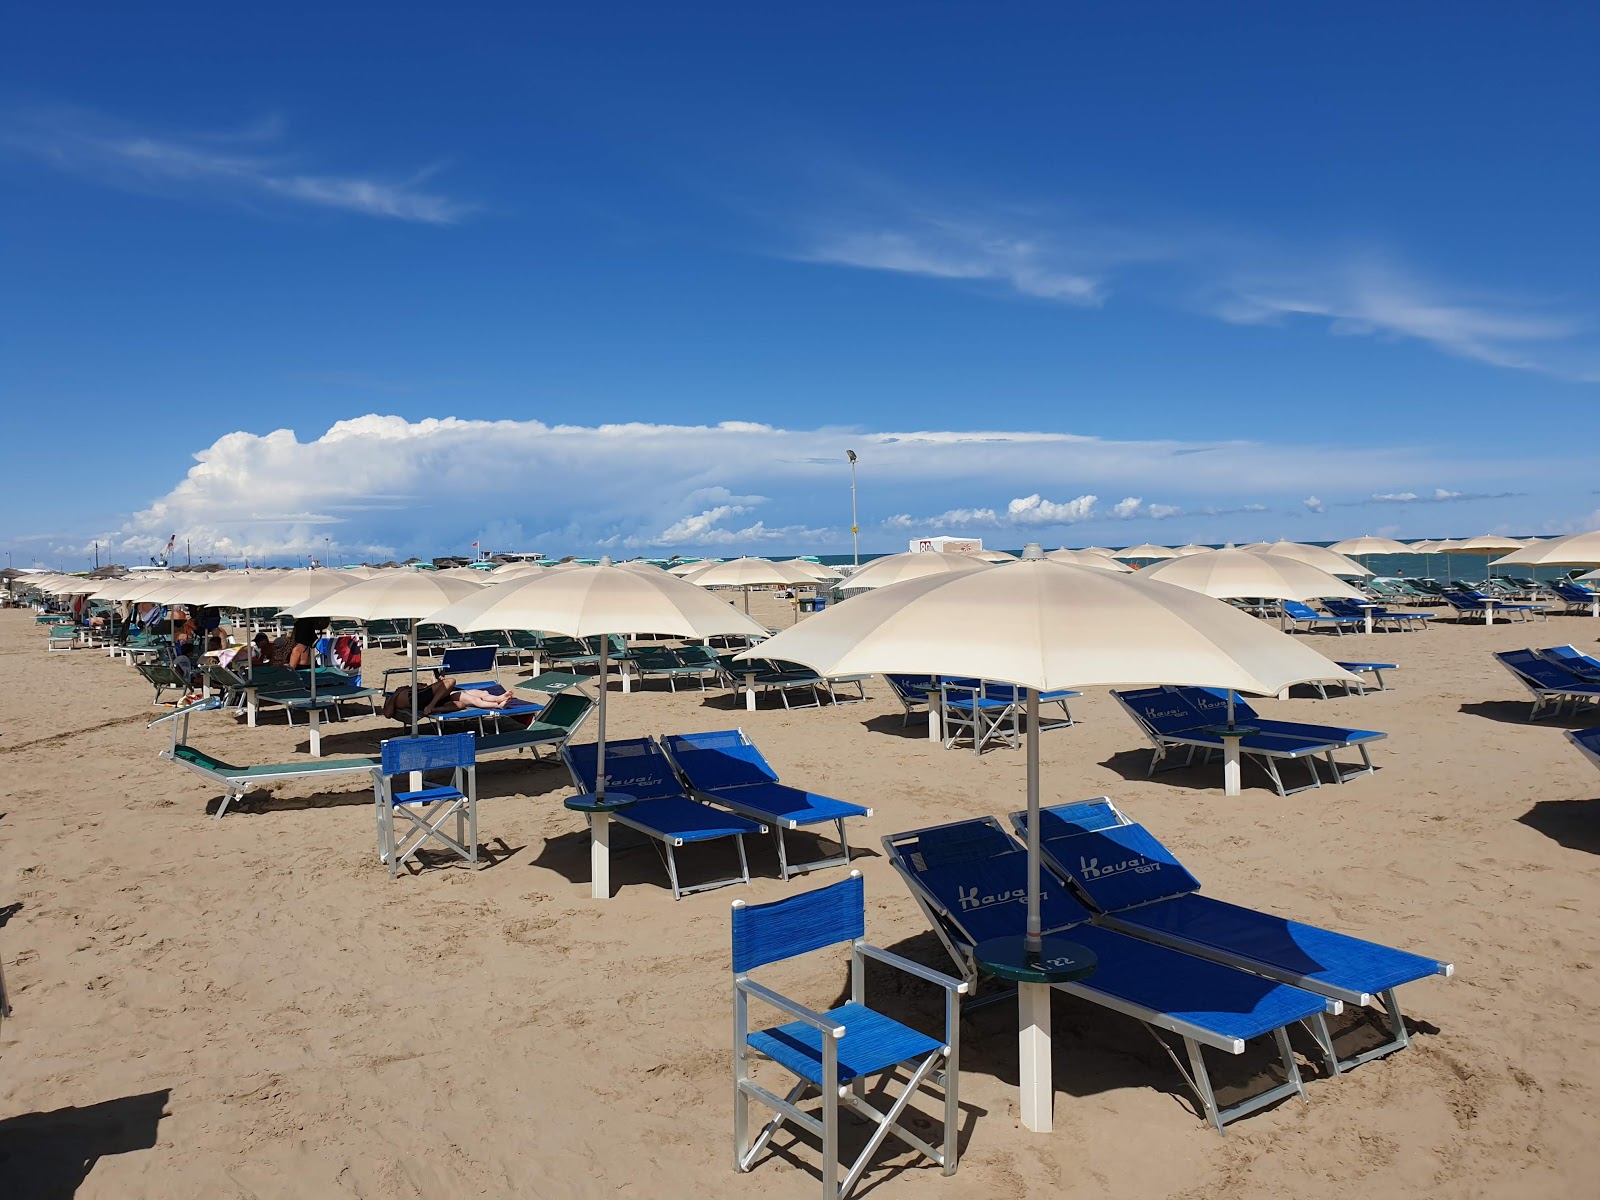 Rimini beach'in fotoğrafı çok temiz temizlik seviyesi ile